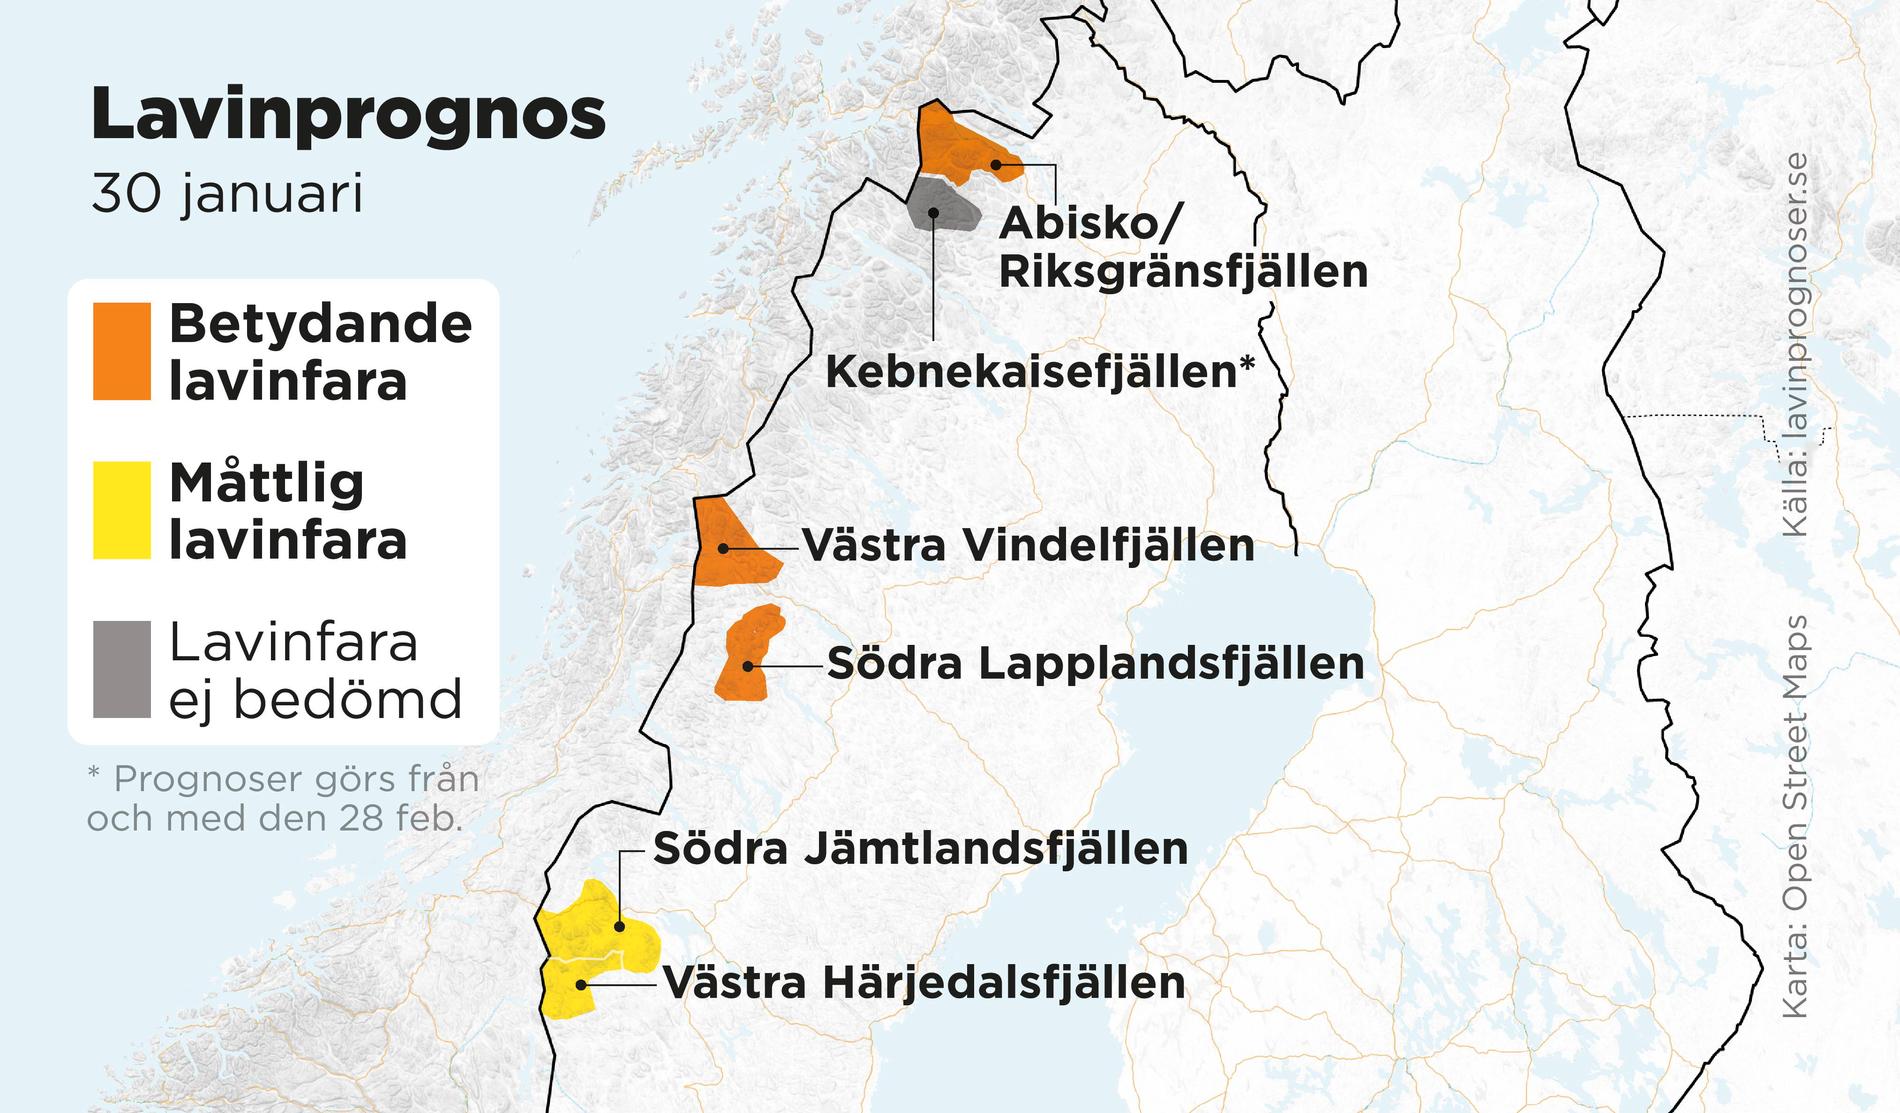 Betydande lavinfara råder i vissa delar i de svenska fjällen under tisdagen.